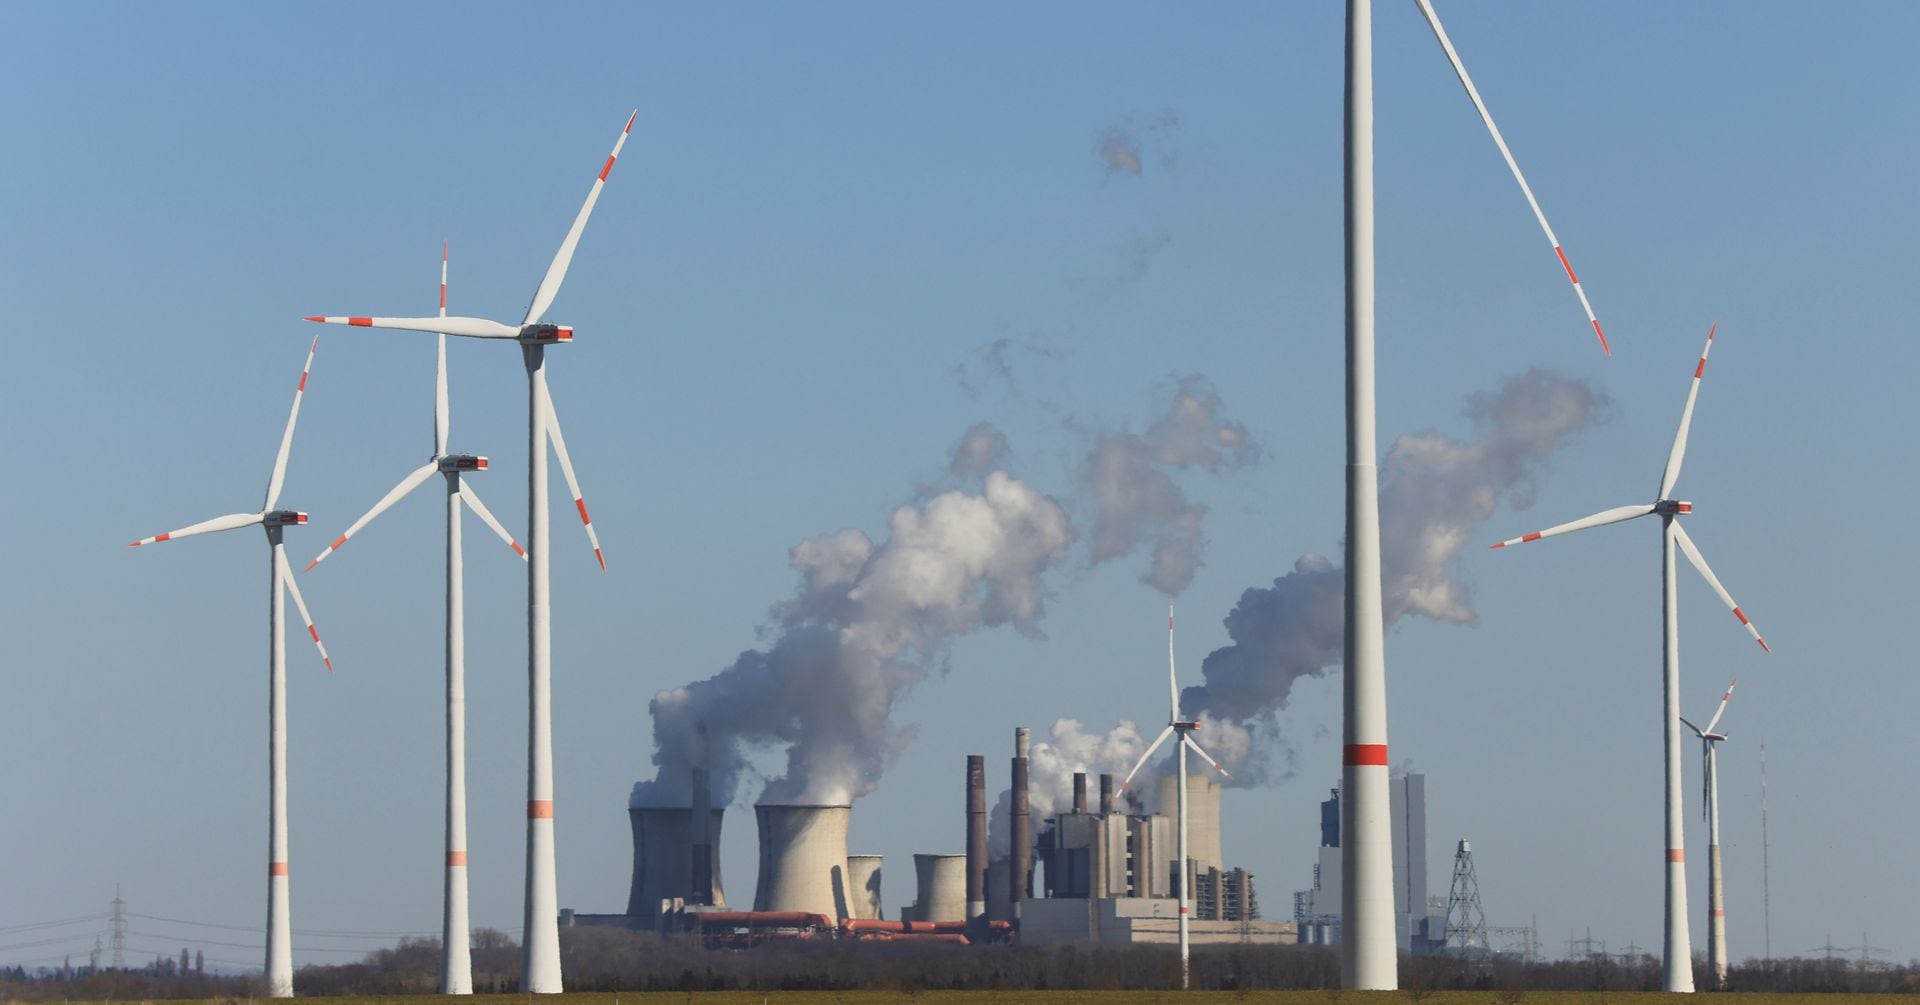 コラム：欧州の発電、風力が初めて石炭抜く エネルギー移行で大きな節目